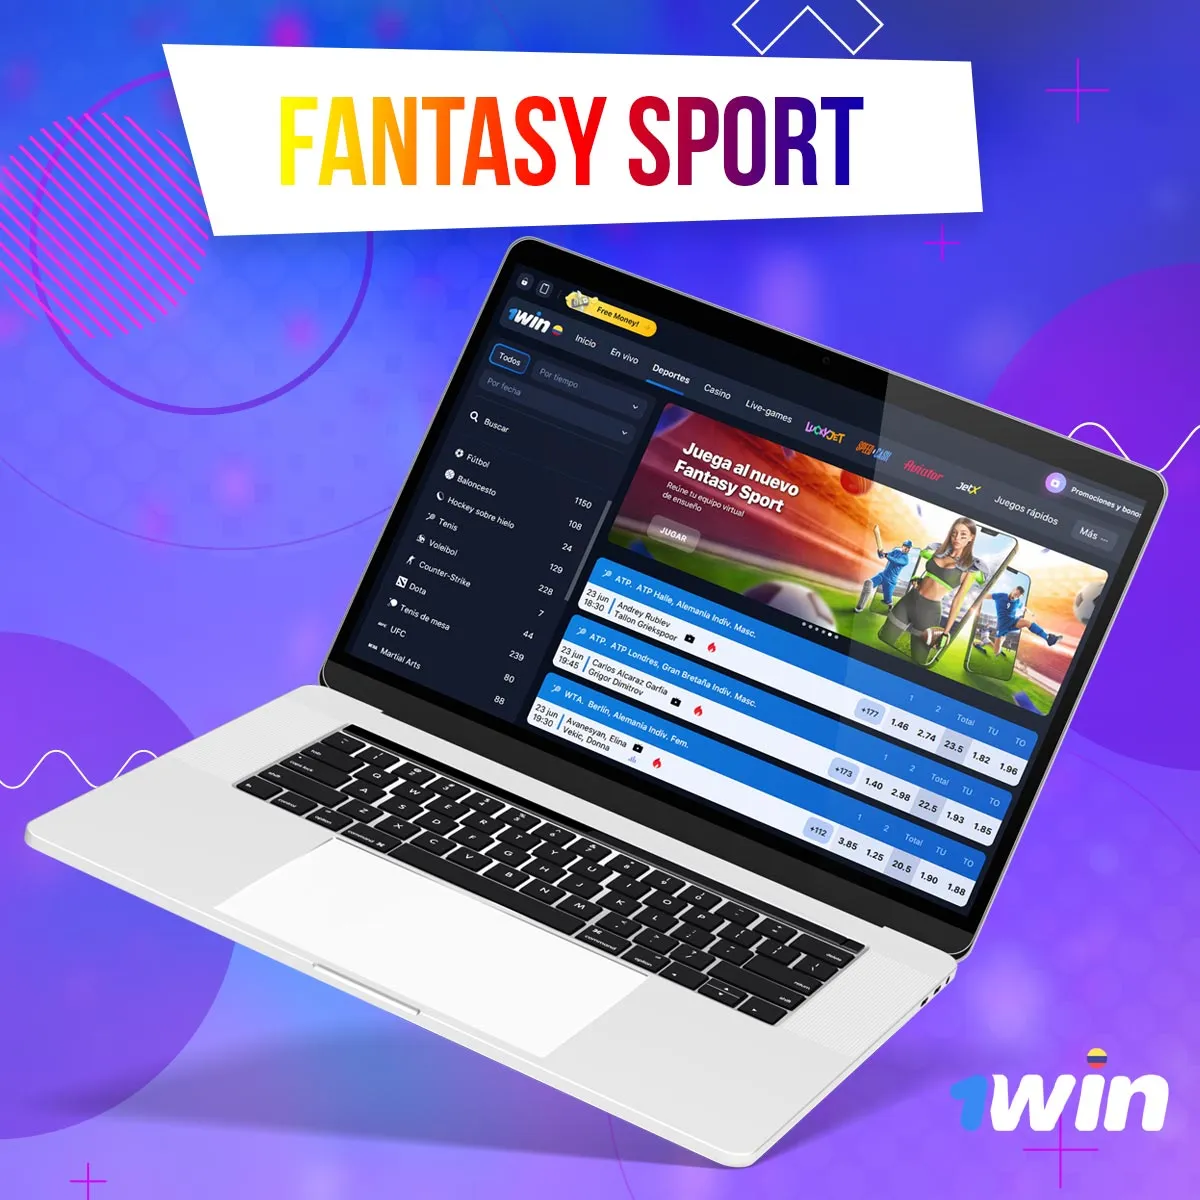 Apostar a deportes de Fantasy sport en línea en la aplicación móvil 1win en Colombia